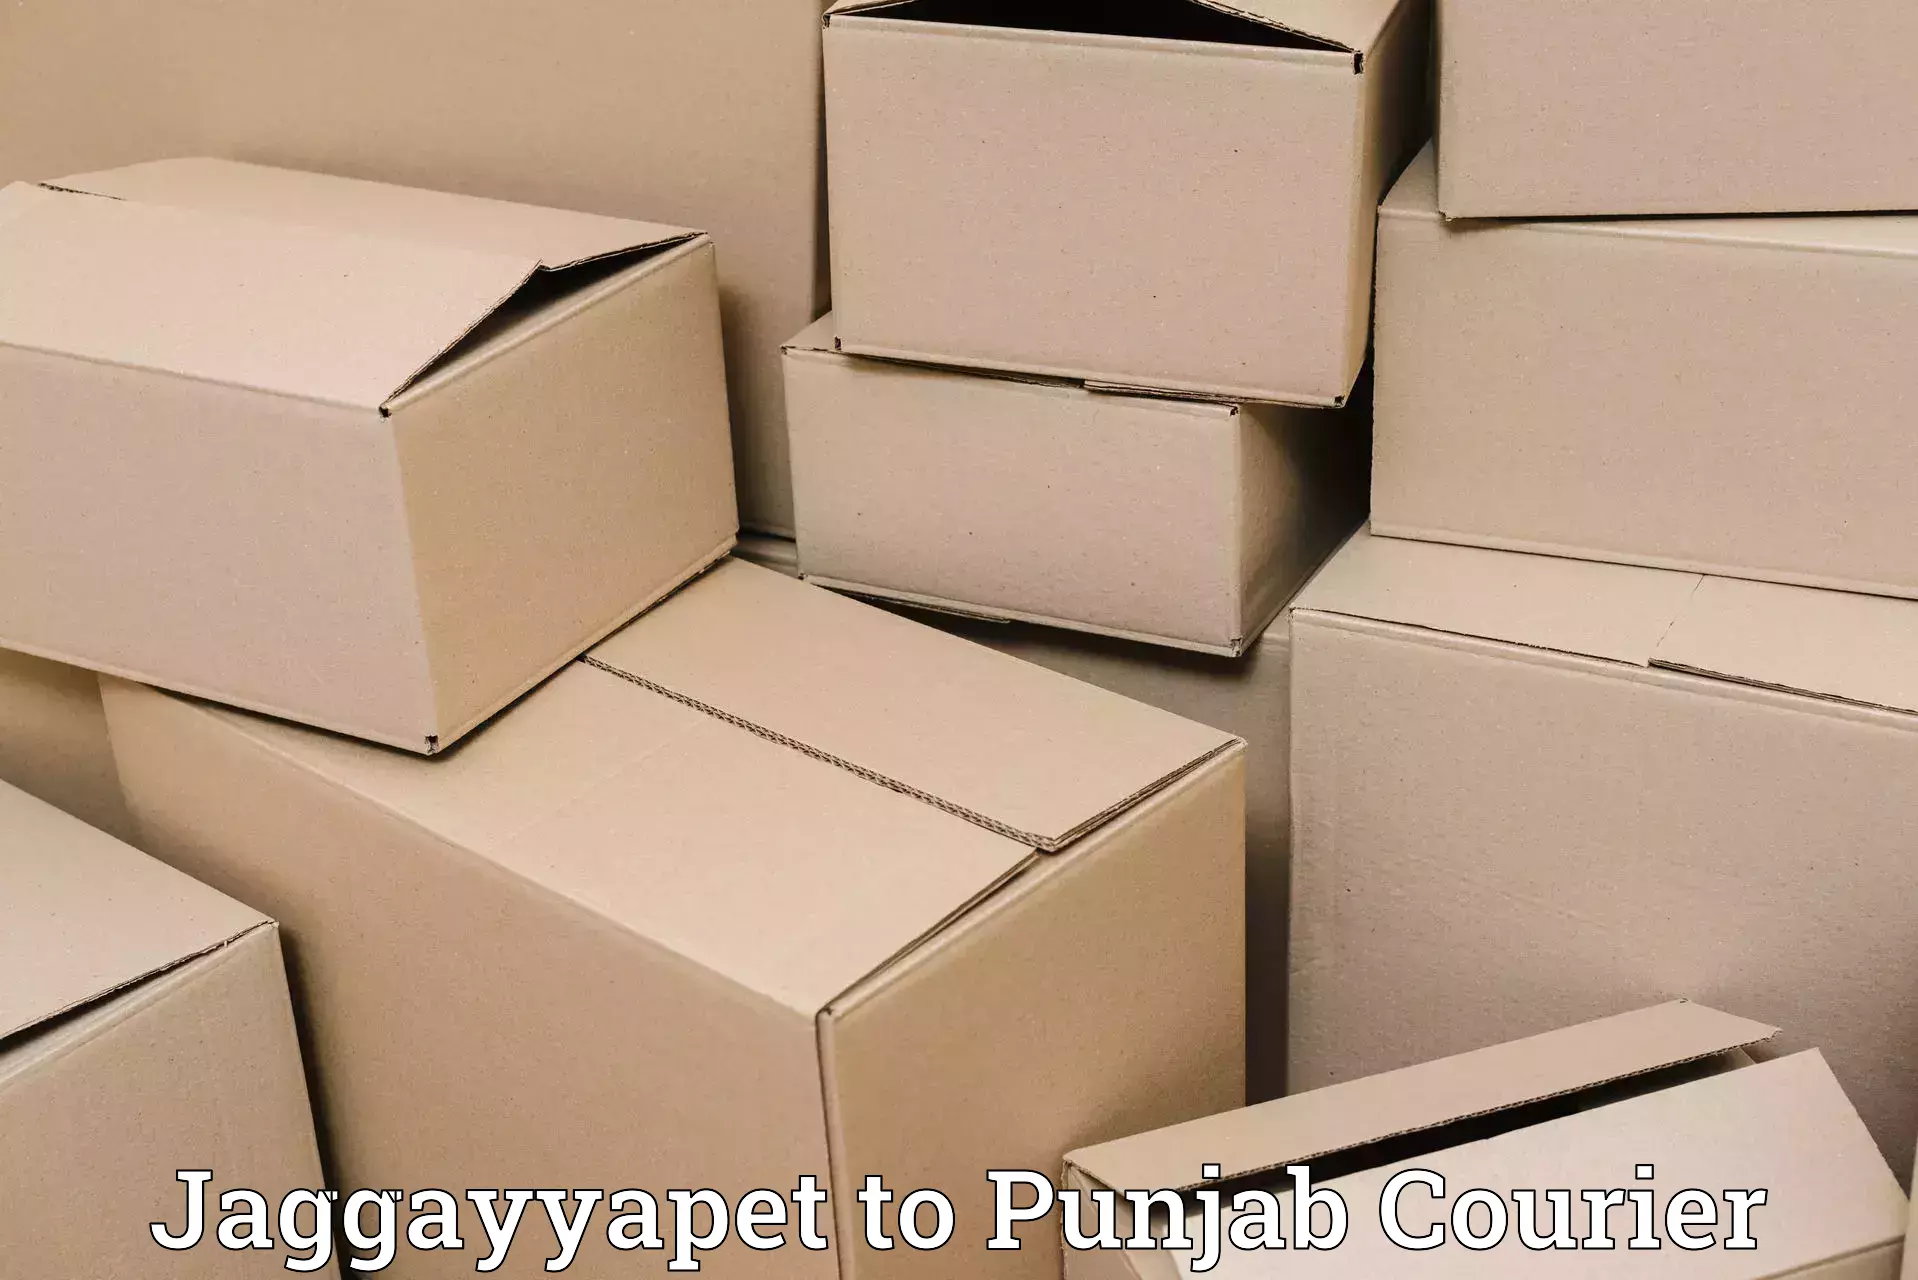 Multi-package shipping Jaggayyapet to Punjab